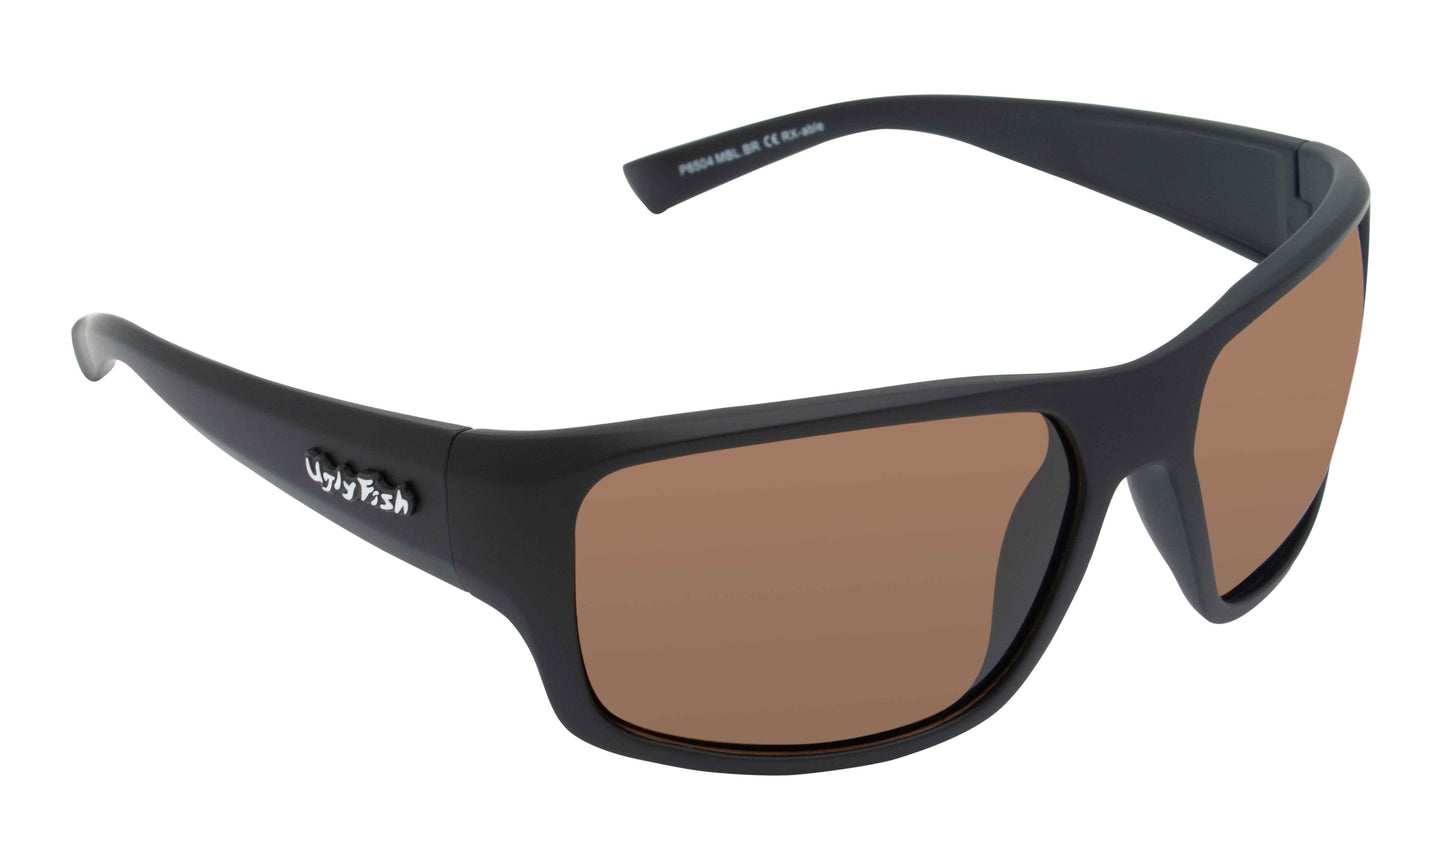 P6504 Polarised Lifestyle Sunglasses